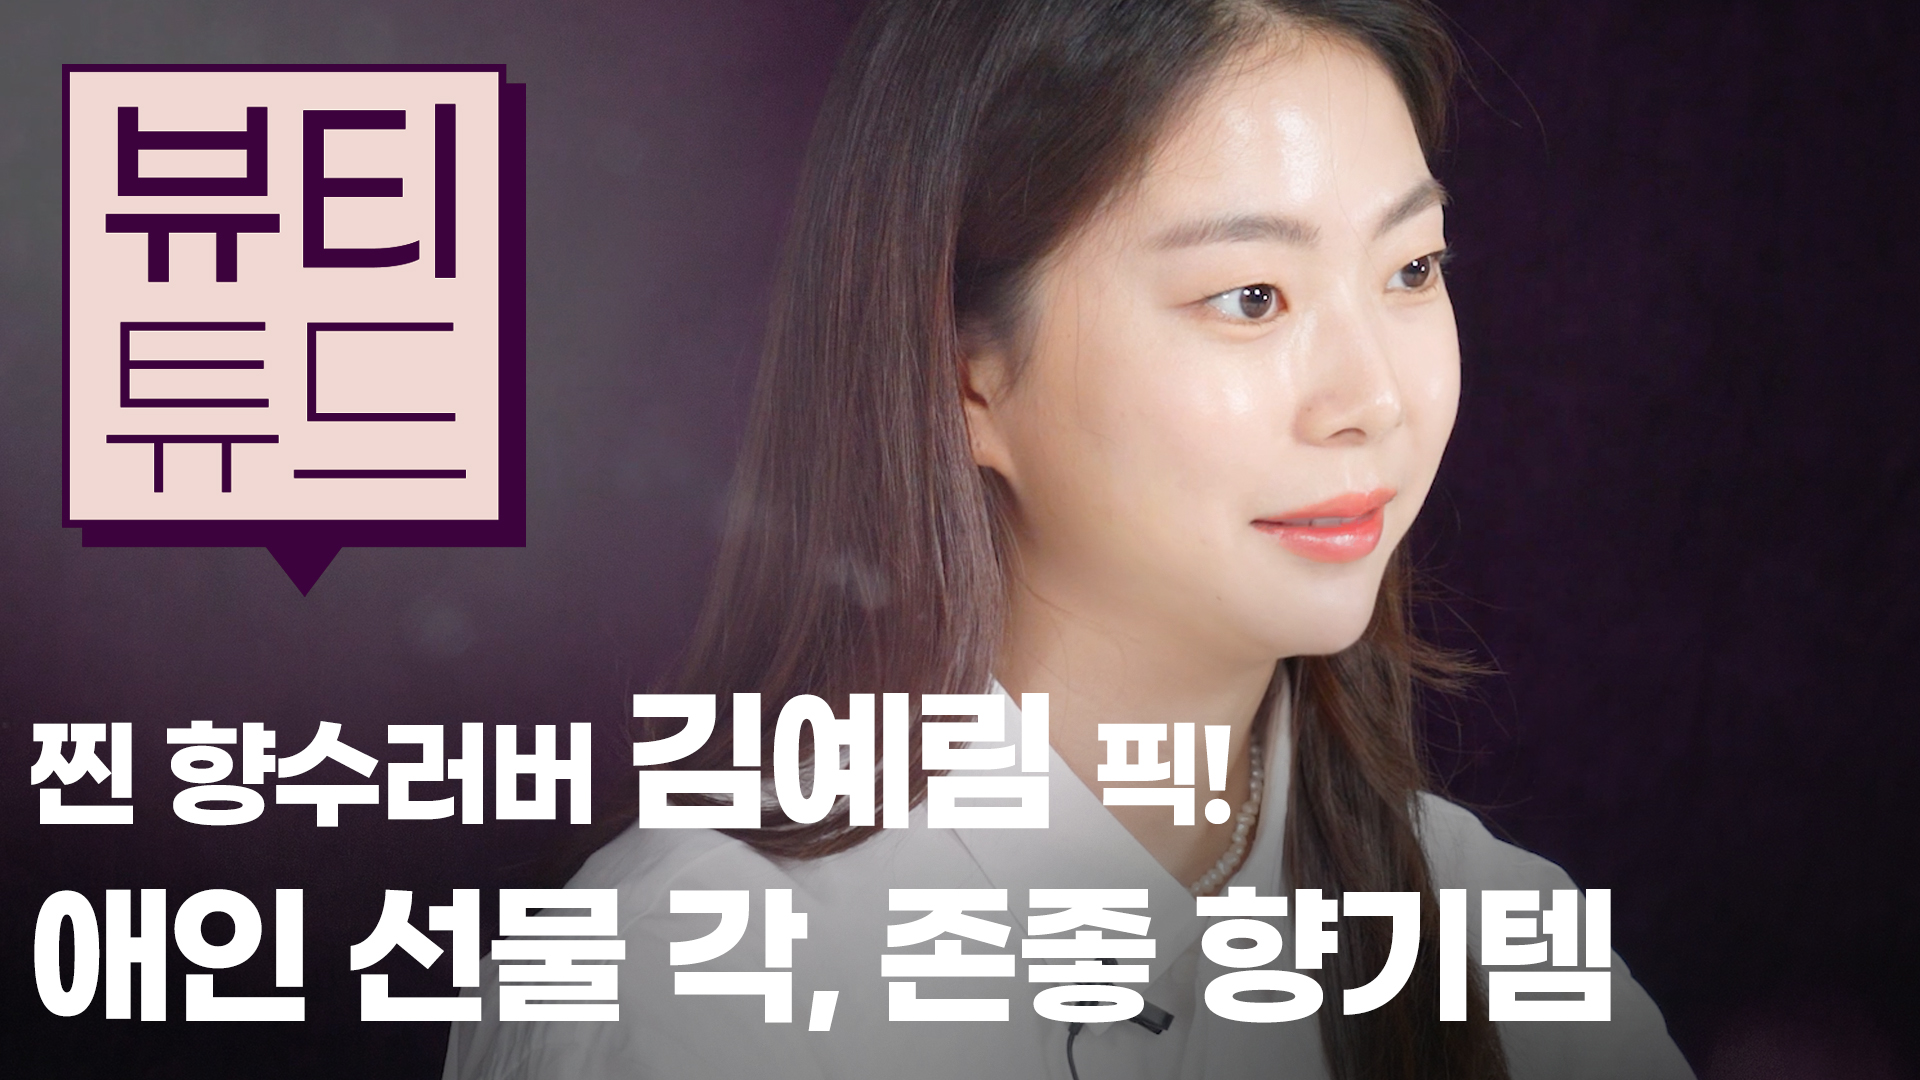 [뷰티튜드] 찐 향수 러버, 모델 김예림이 추천하는 애인 선물각! 존좋 향기템